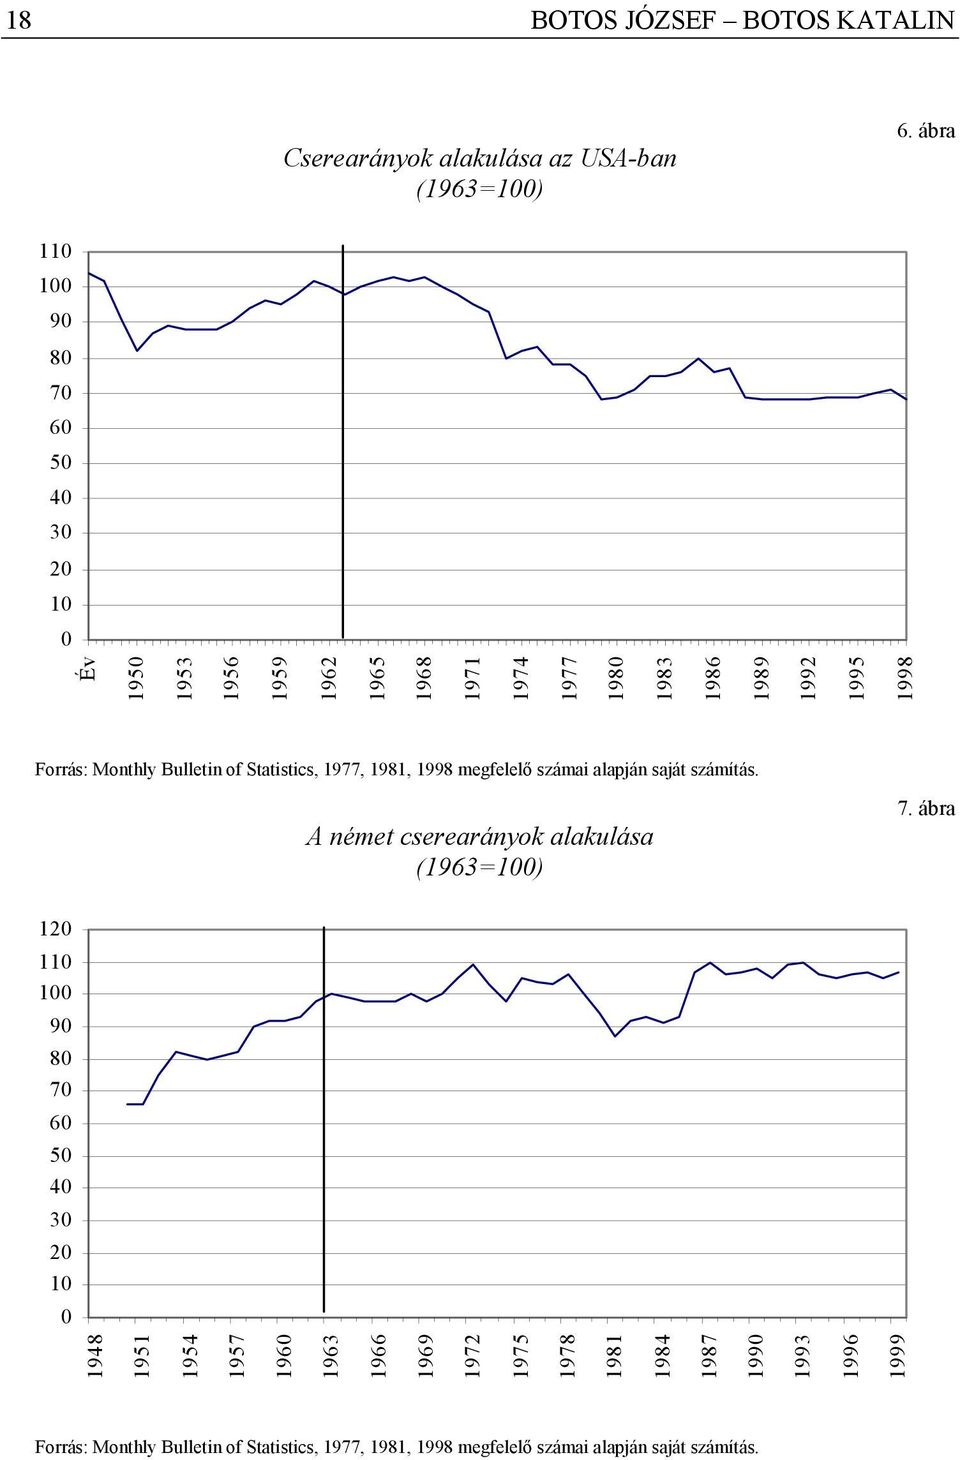 Bulletin of Statistics, 1977, 1981, 1998 megfelelő számai alapján saját számítás. A német cserearányok alakulása (1963=100) 7.